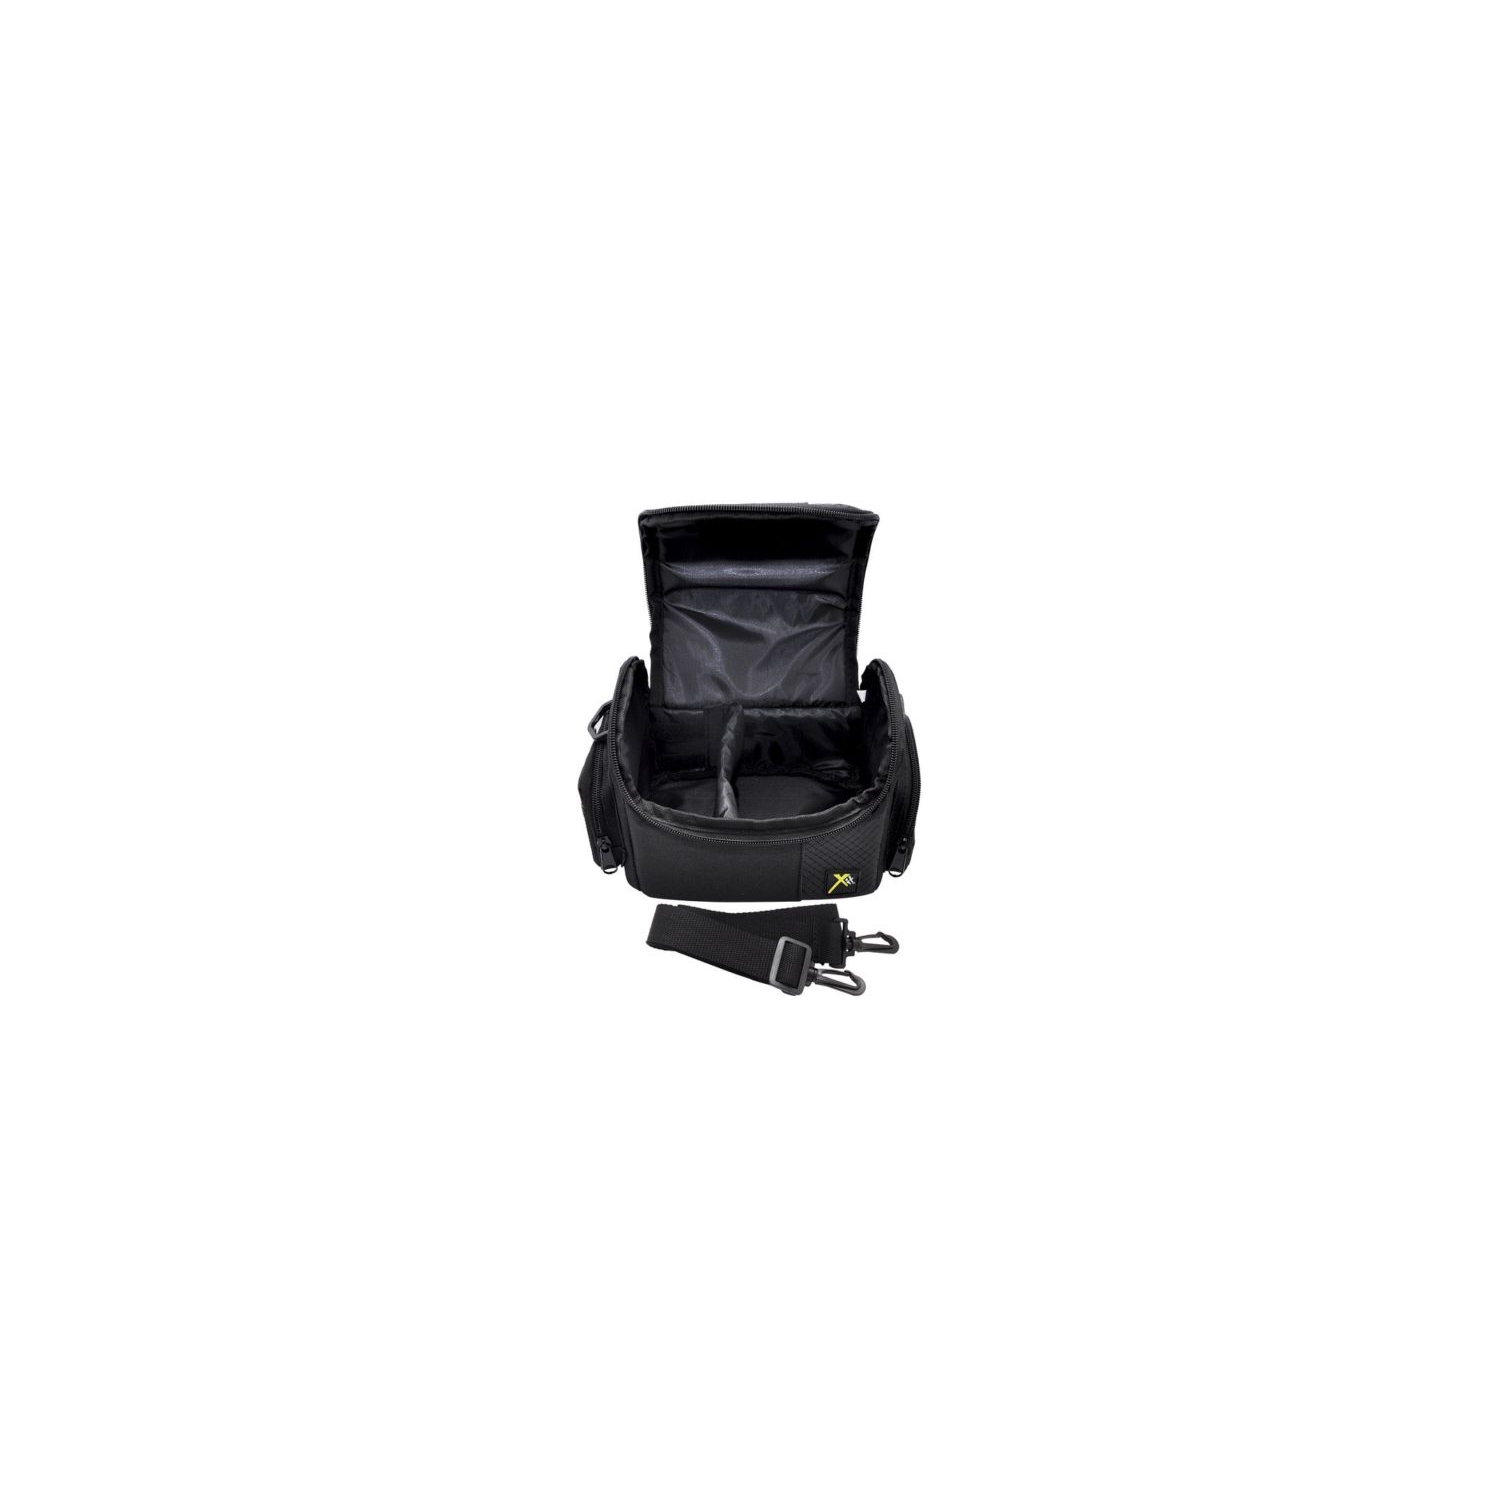 Deluxe Camera Carrying Case Bag For Sony DSC-HX400 DSC-HX300 DSC-H400 DSC-H300